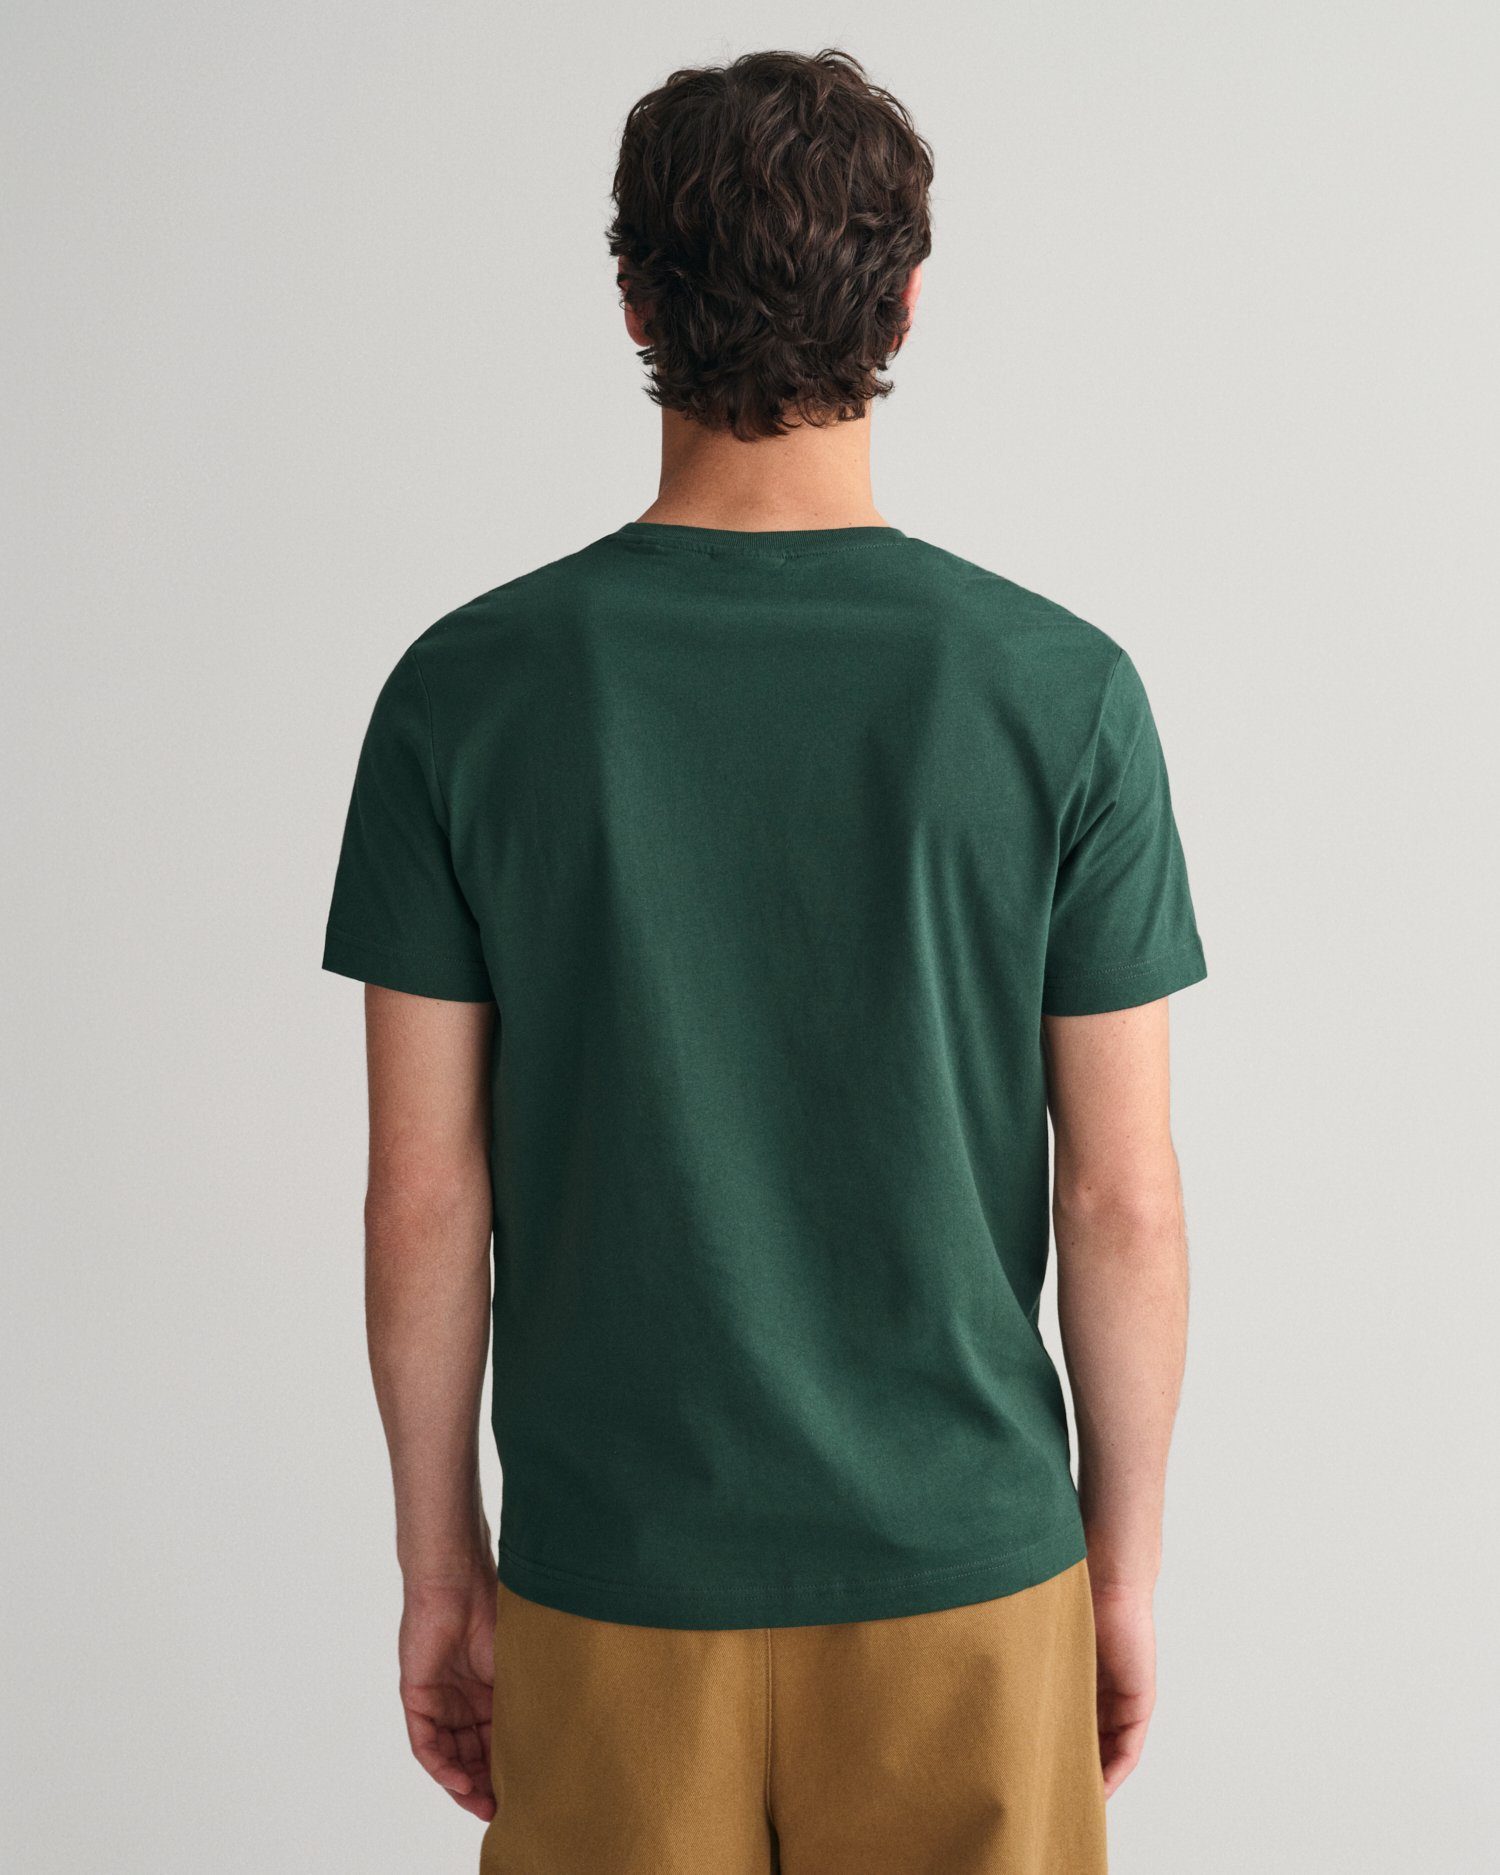 GRAPHIC TARTAN REG GREEN T-Shirt T-SHIRT SS SMALL Gant